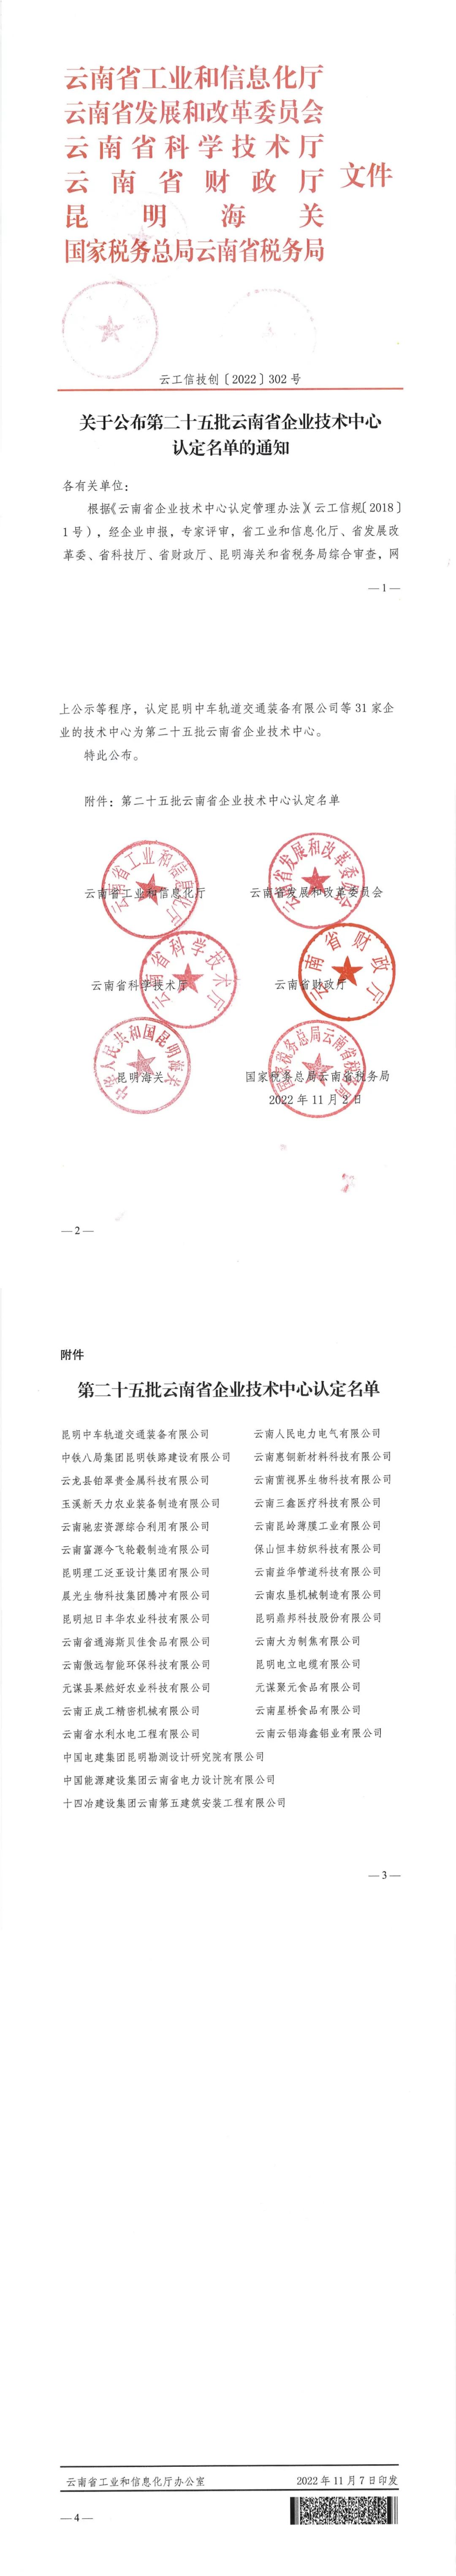 云铝海鑫顺利通过云南省企业技术中心认证